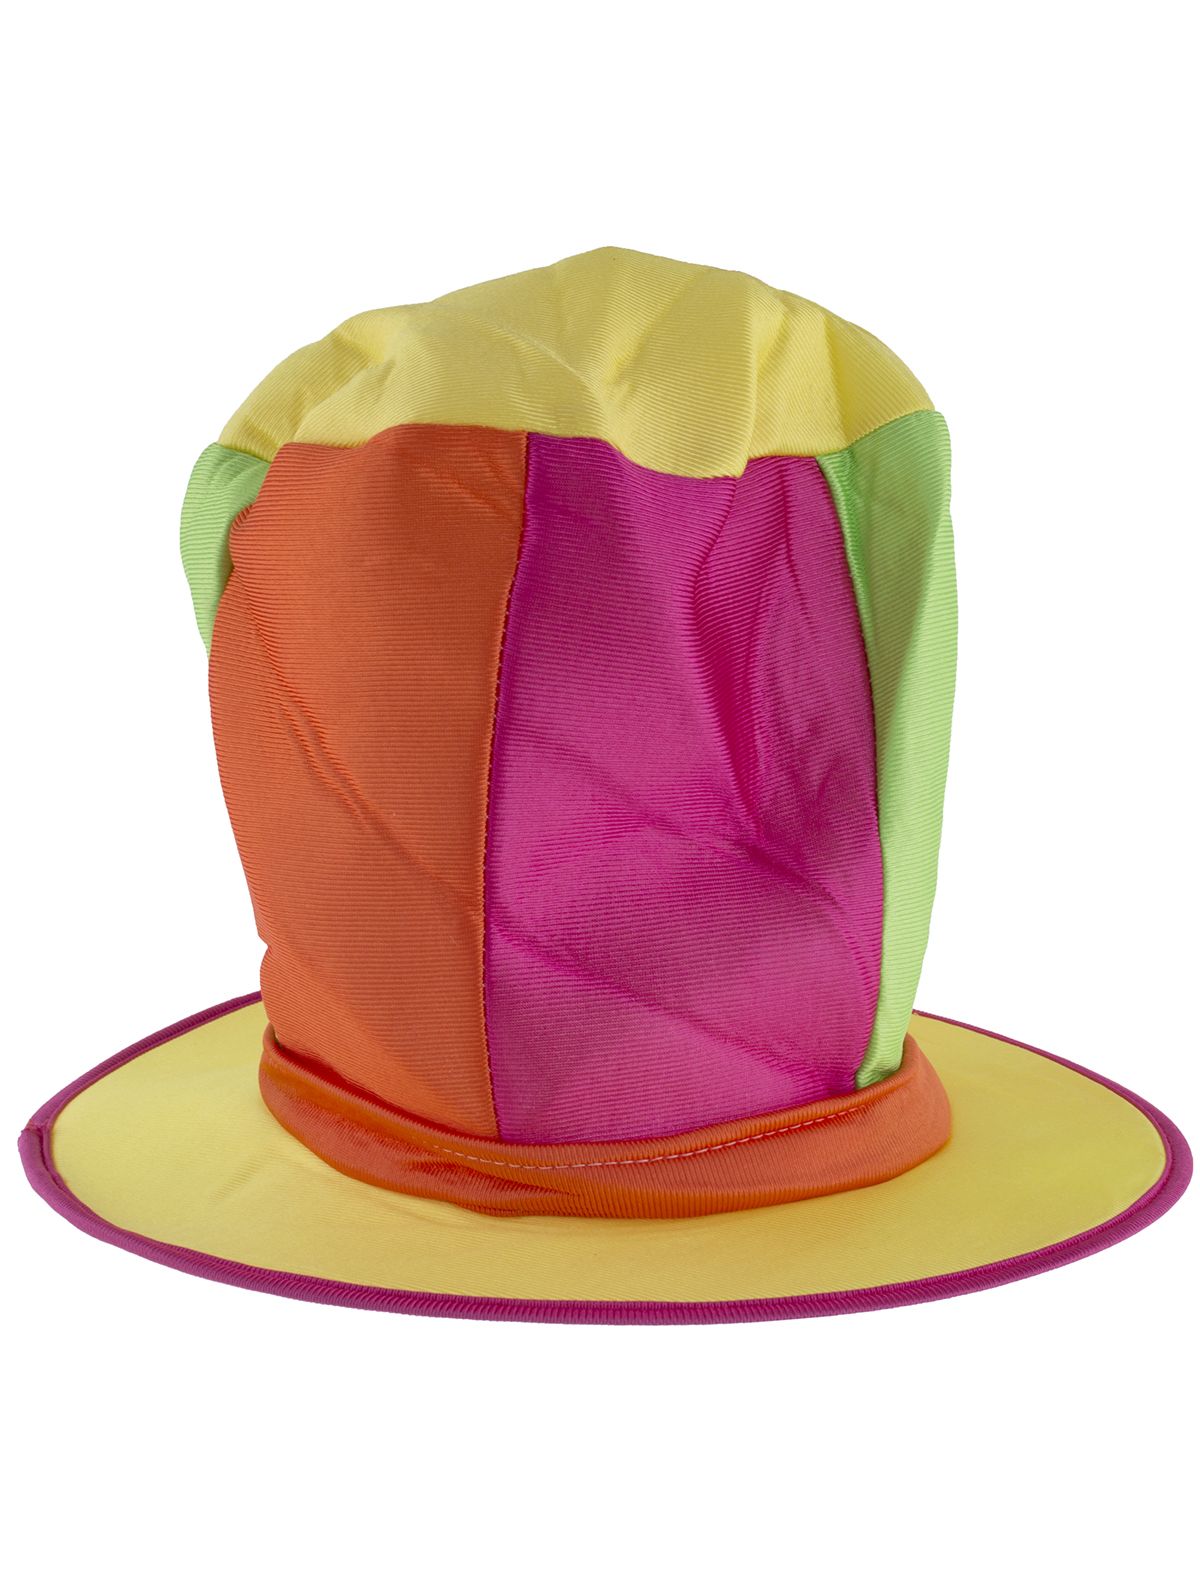 Cappello da Clown Cilindro Alto Multicolore - Fantaparty.it